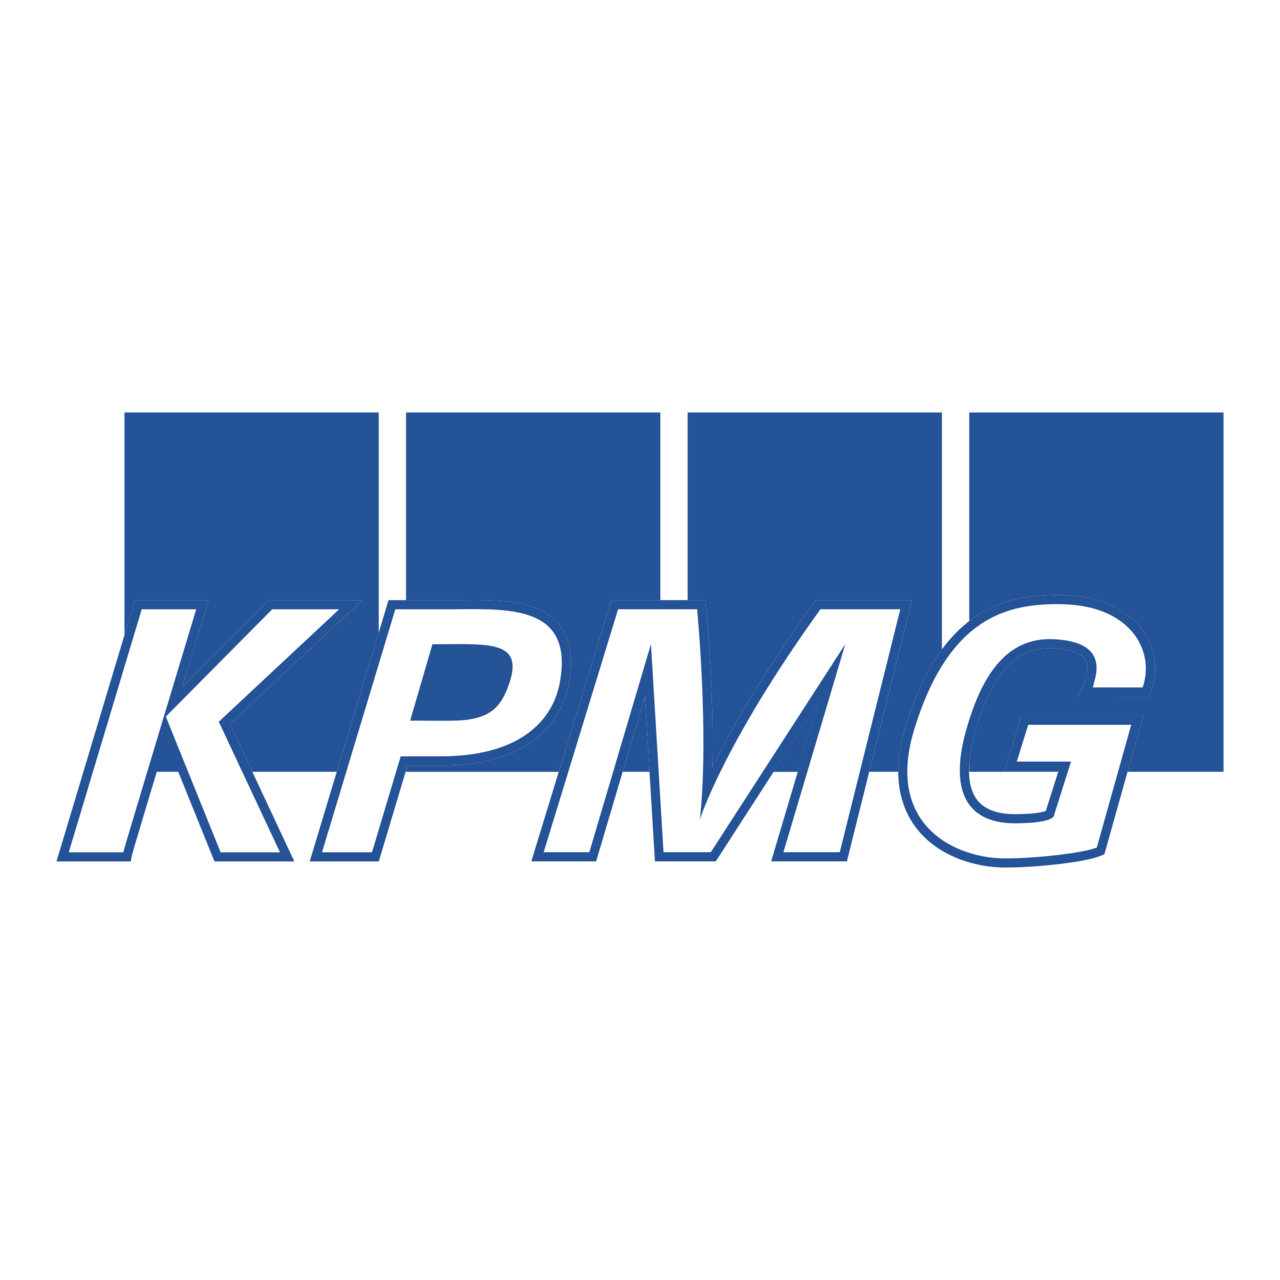 KPMG Tuyển Dụng Thực Tập Sinh HR - Recruitment Full-time